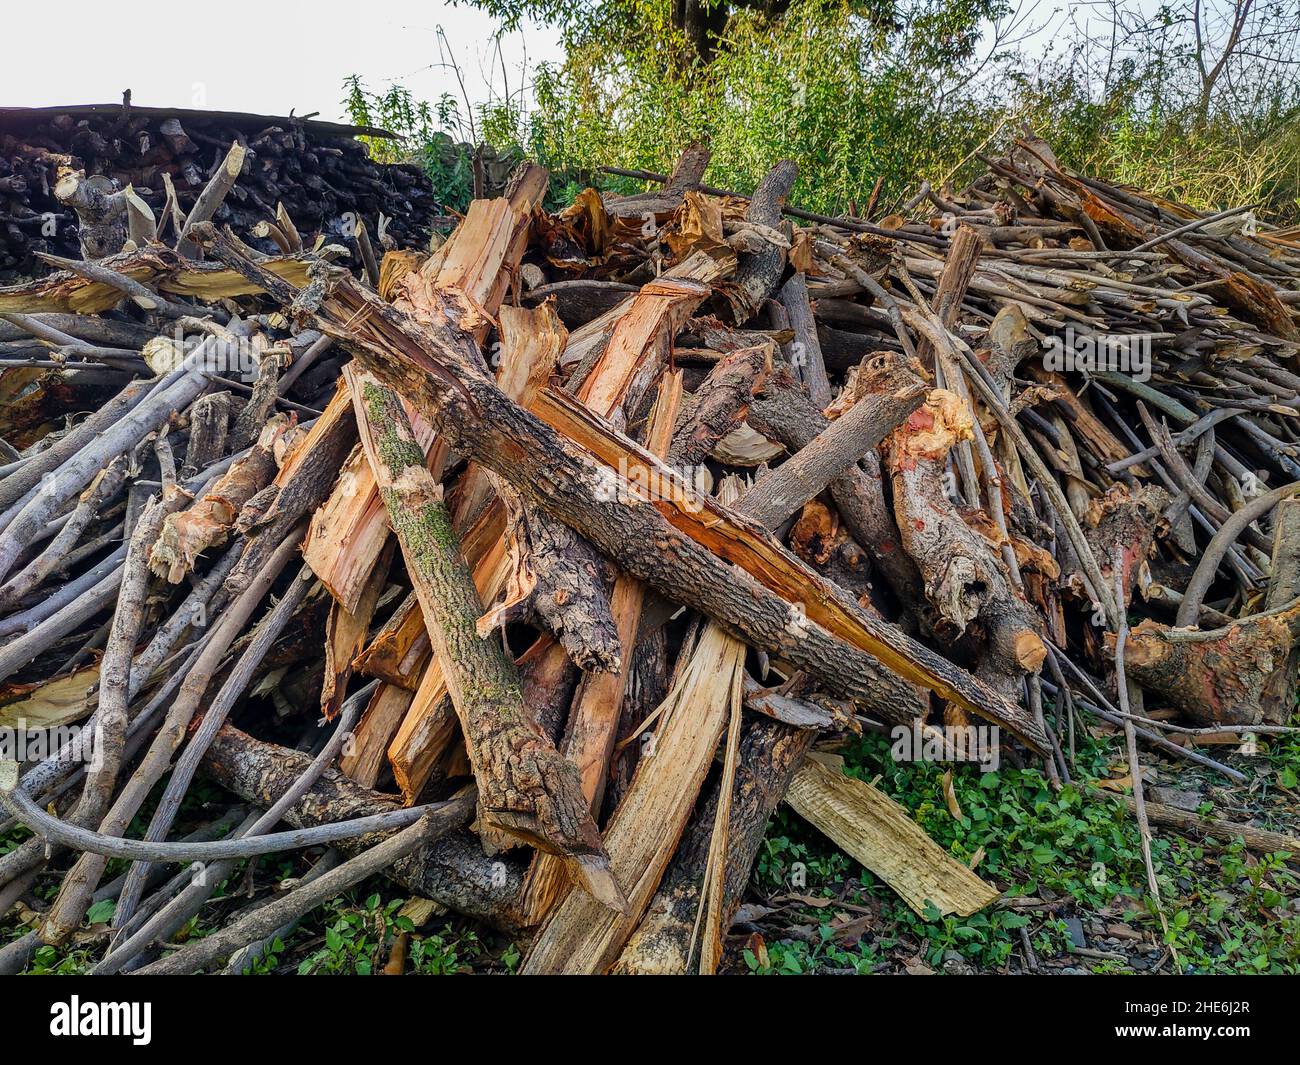 Pilas de leña recolectadas por los pobladores del bosque. Foto de stock